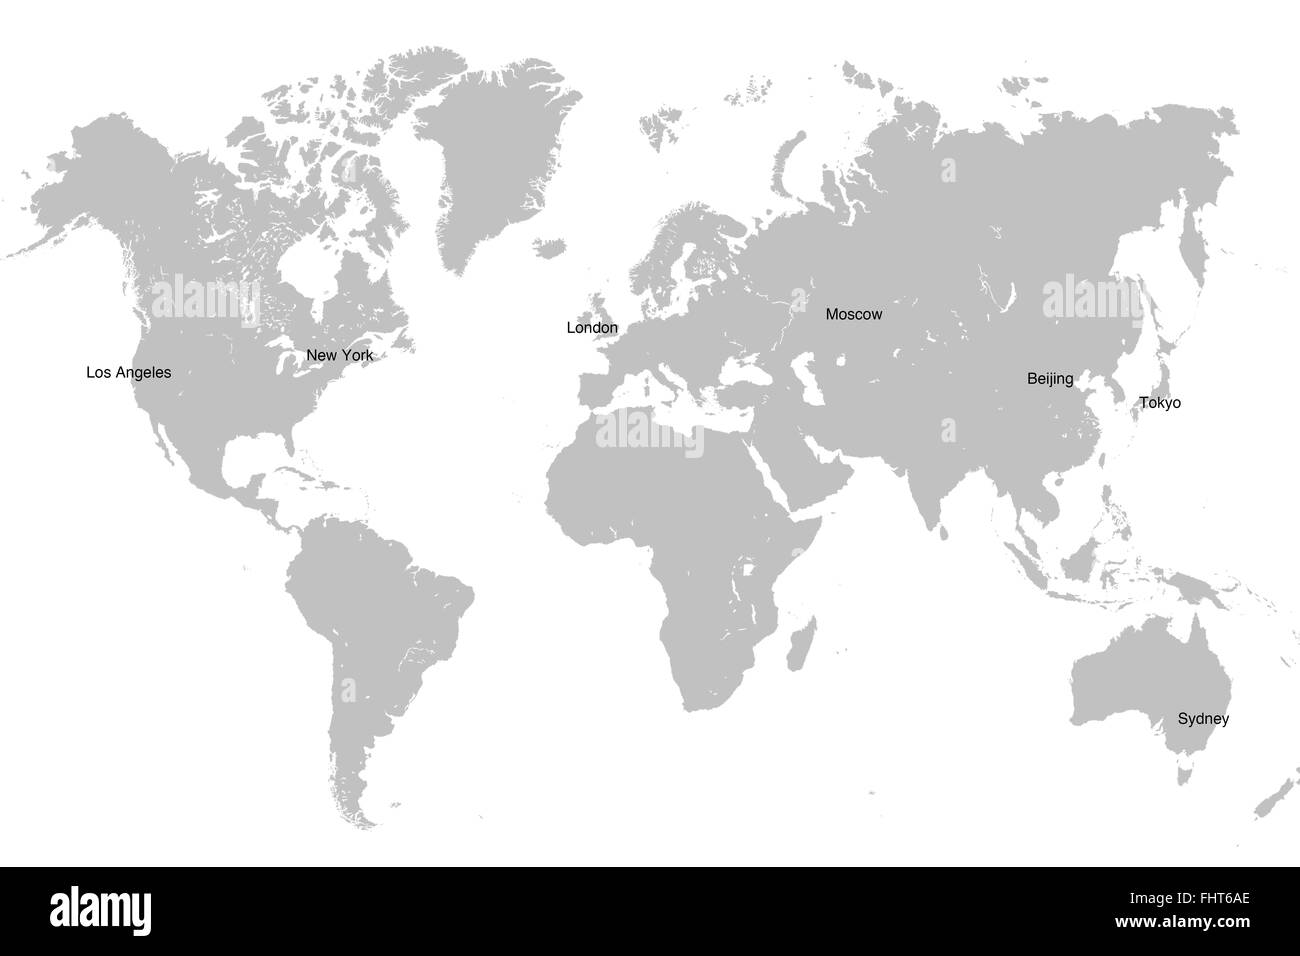 World map isolated on white. Stock Photo